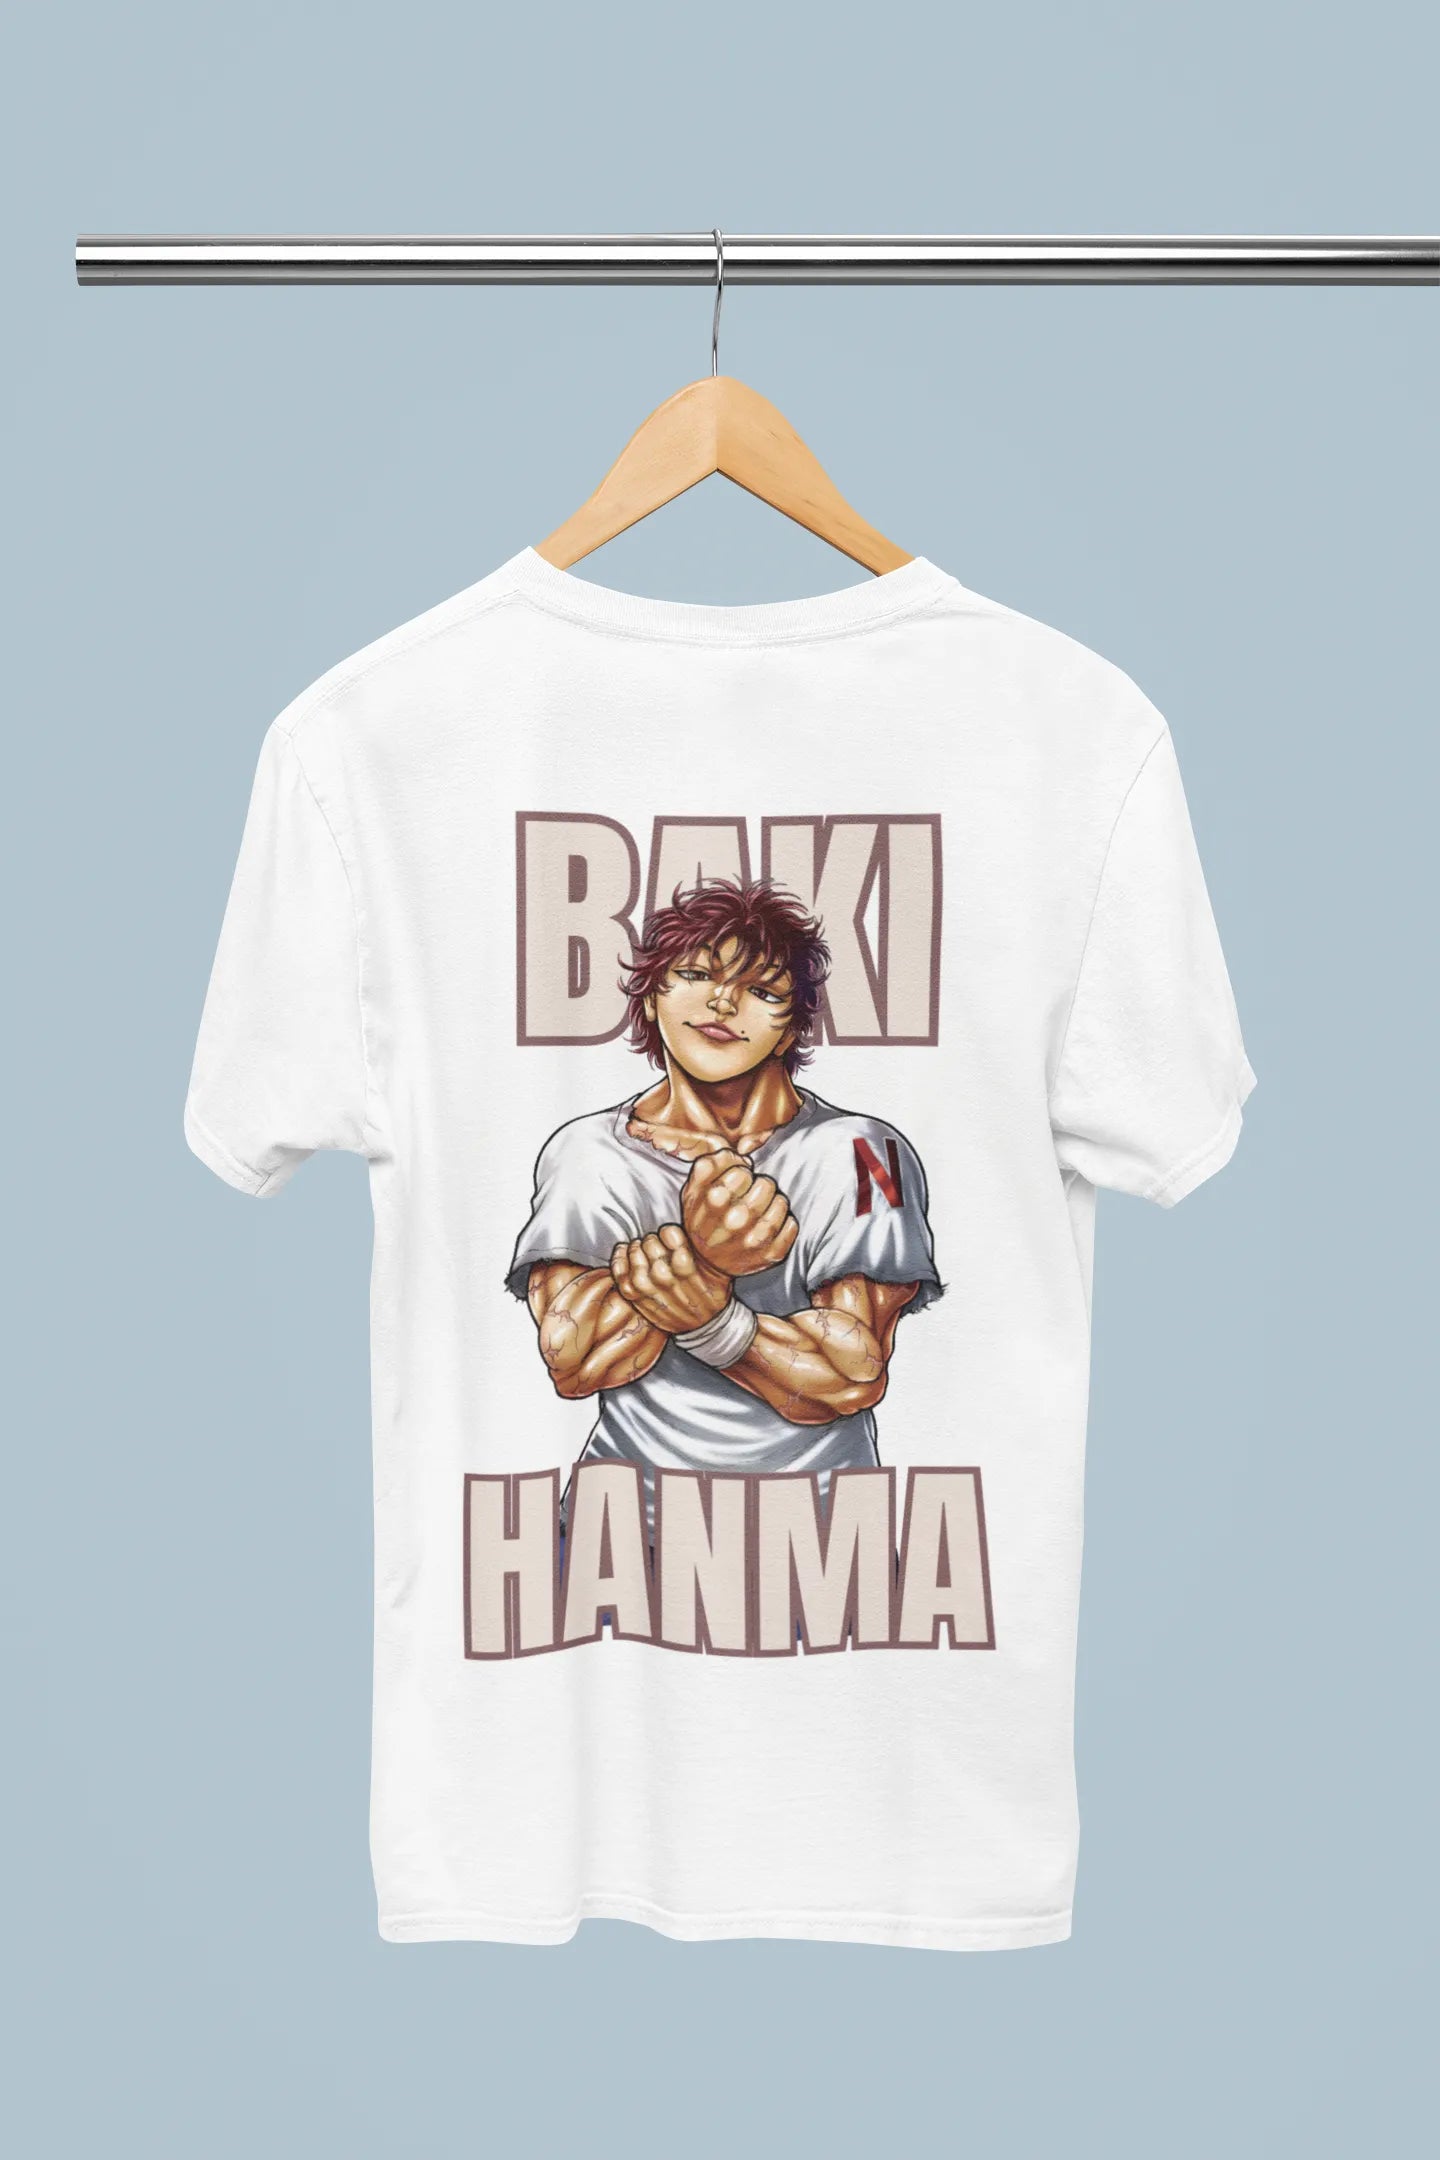 Baki Hanma | Oversized Half Sleeve Unisex Tee | Broke Memers